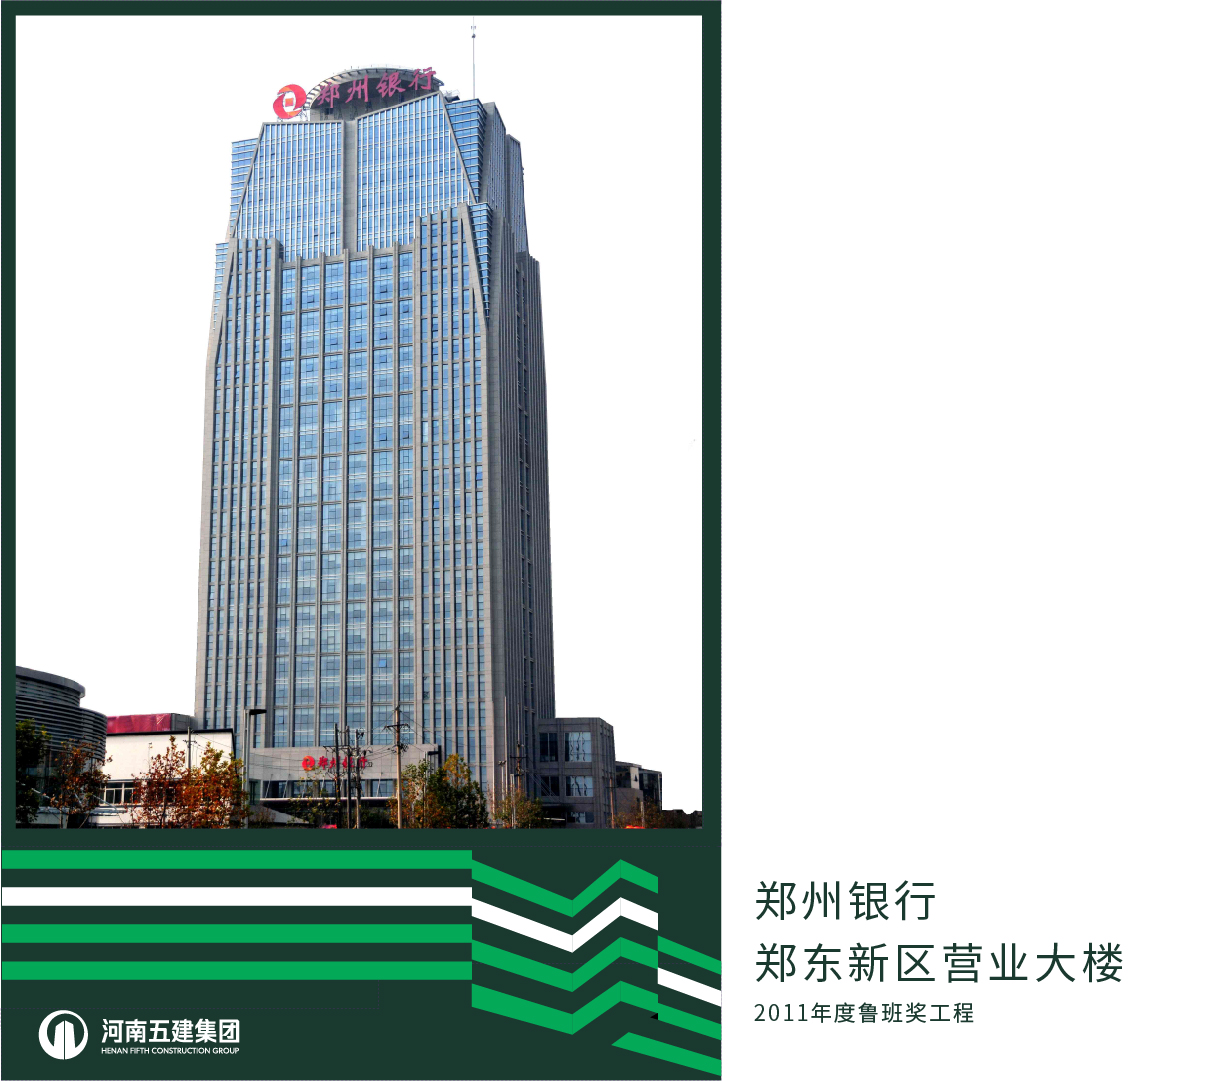 郑州银行郑东新区营业大楼(图1)